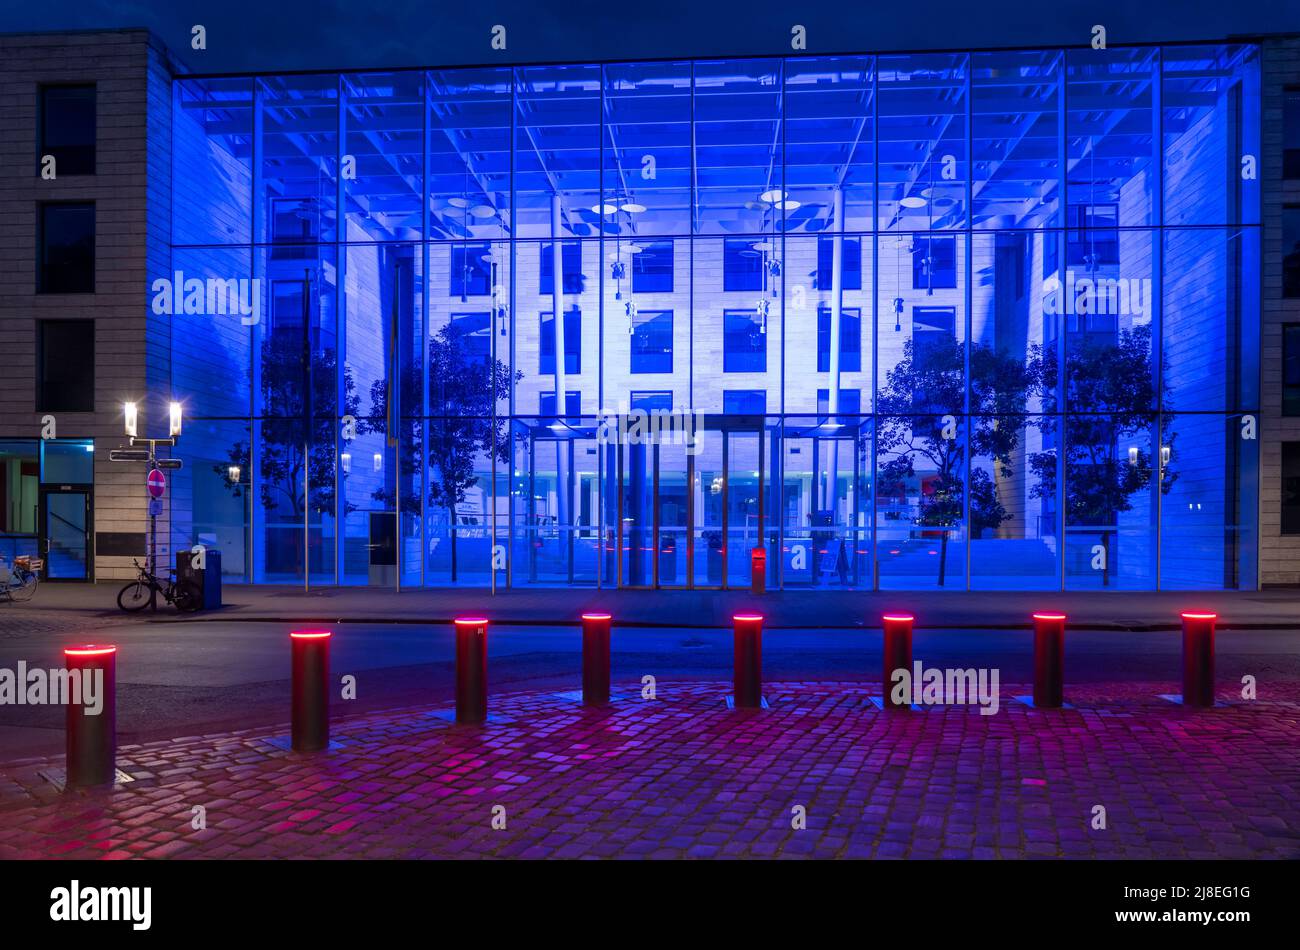 Historische Altstadt, blau beleuchtetes Gebäude der Bezirksregierung Münster, beleuchtete Schranke, Poller, in Münster, NRW, Deutschland Stockfoto